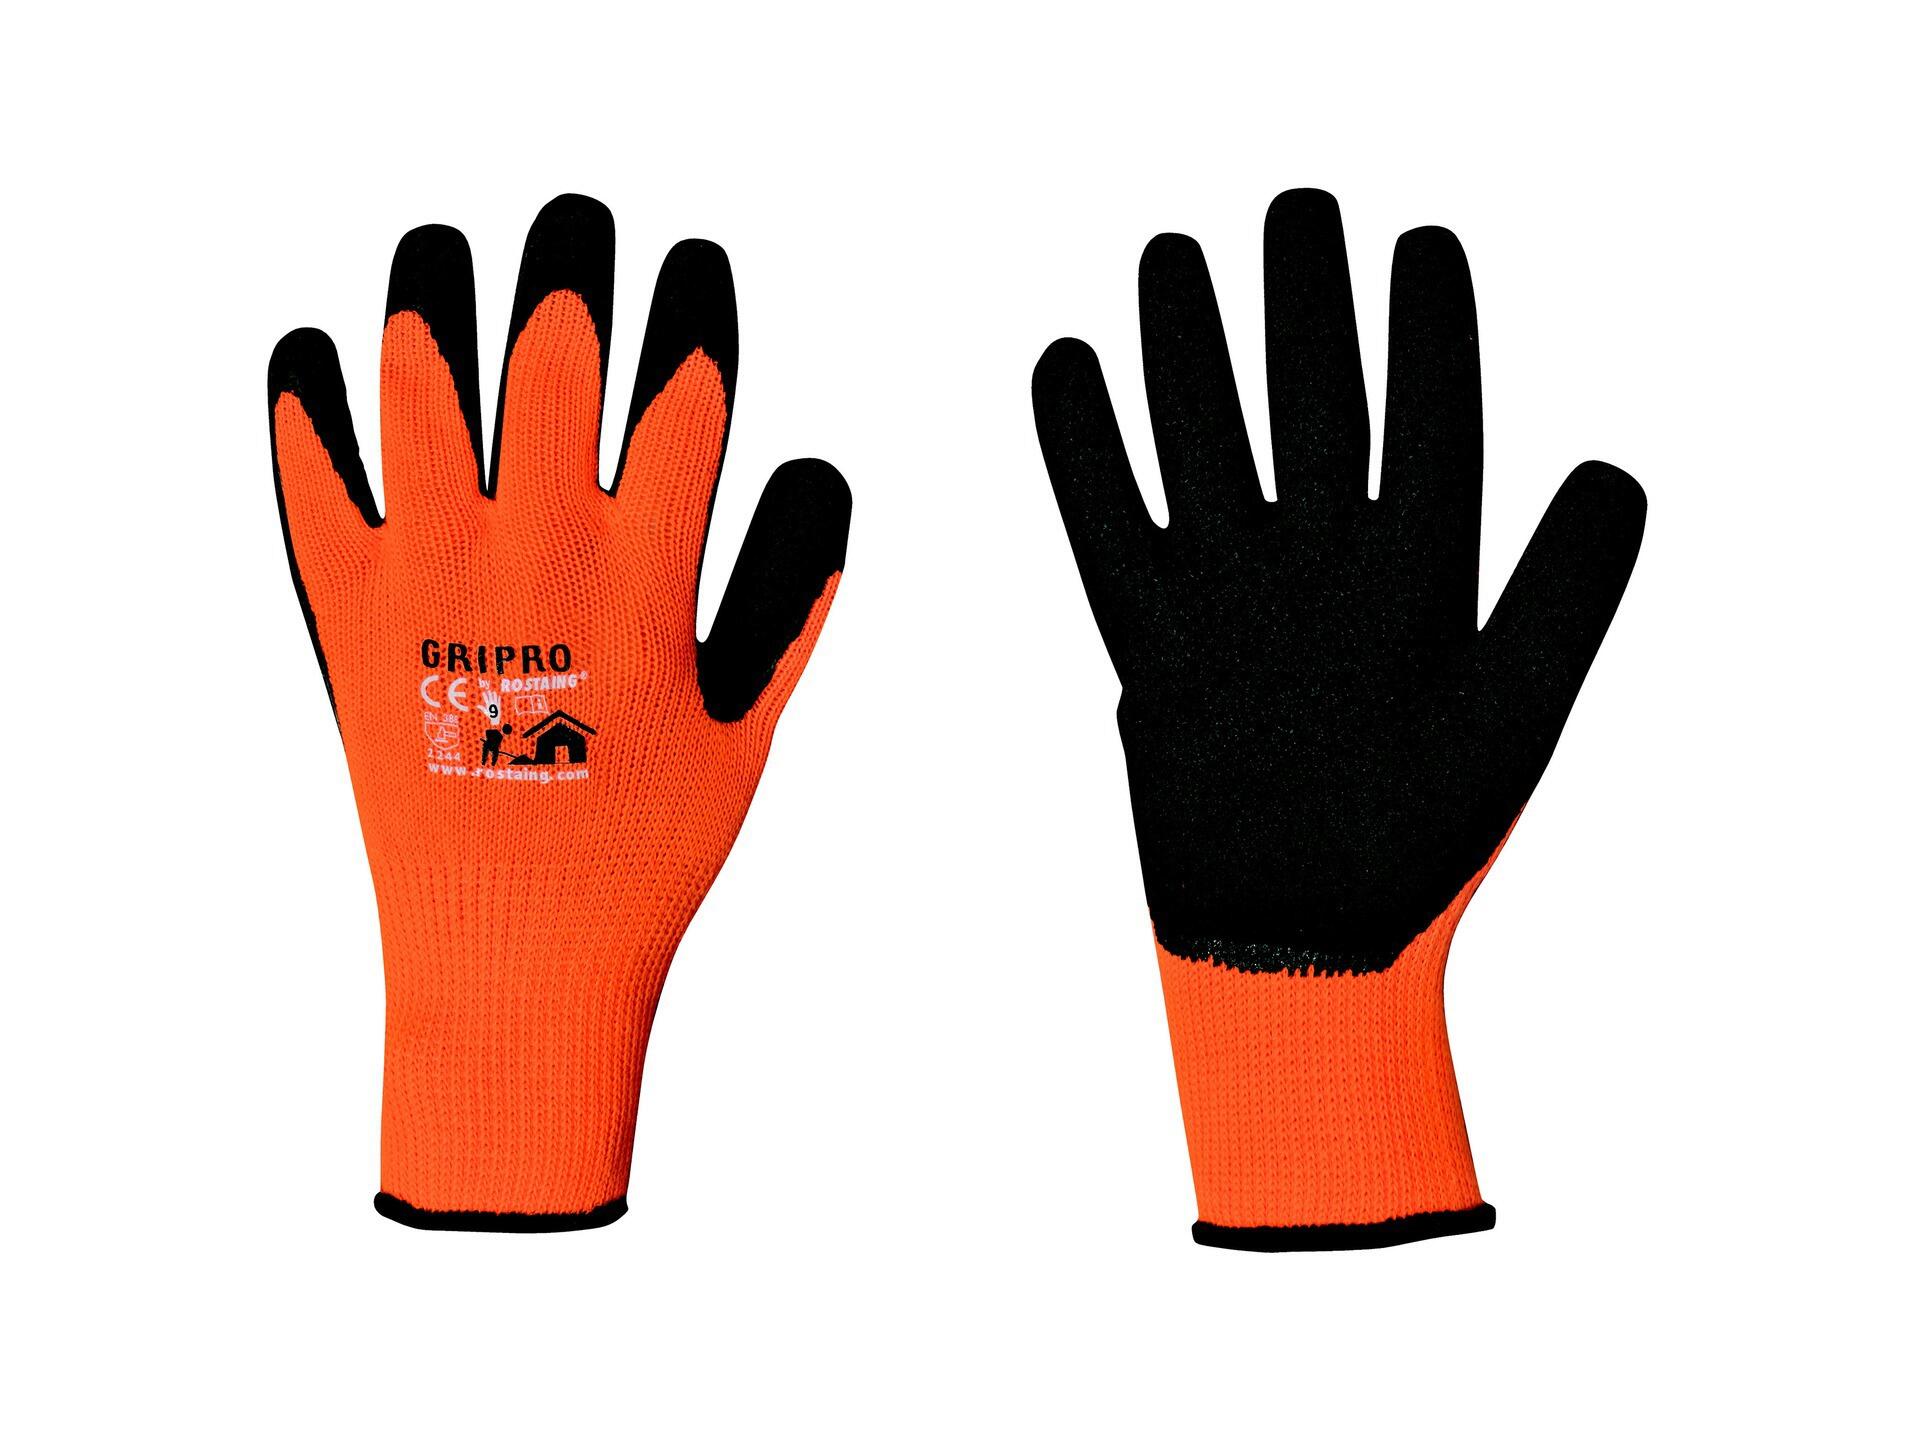 Rostaing Grip Pro gants de travail 10 polycotton orange